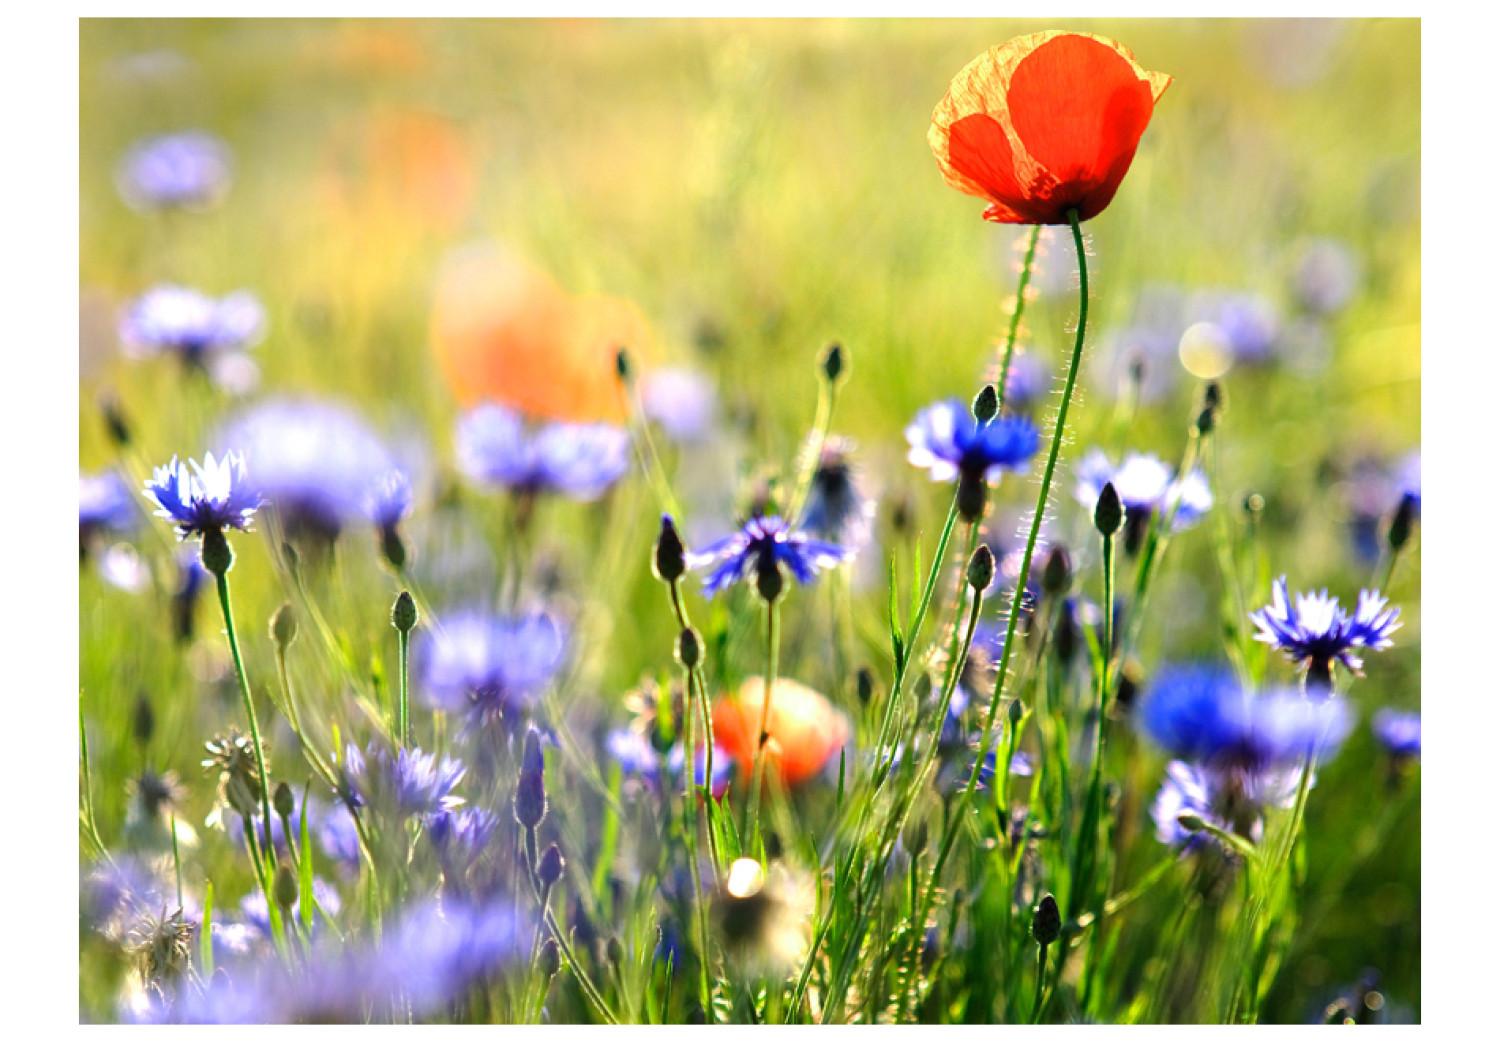 Fotomural Prado - amapolas entre centaureas y zoom a flores en prado borroso